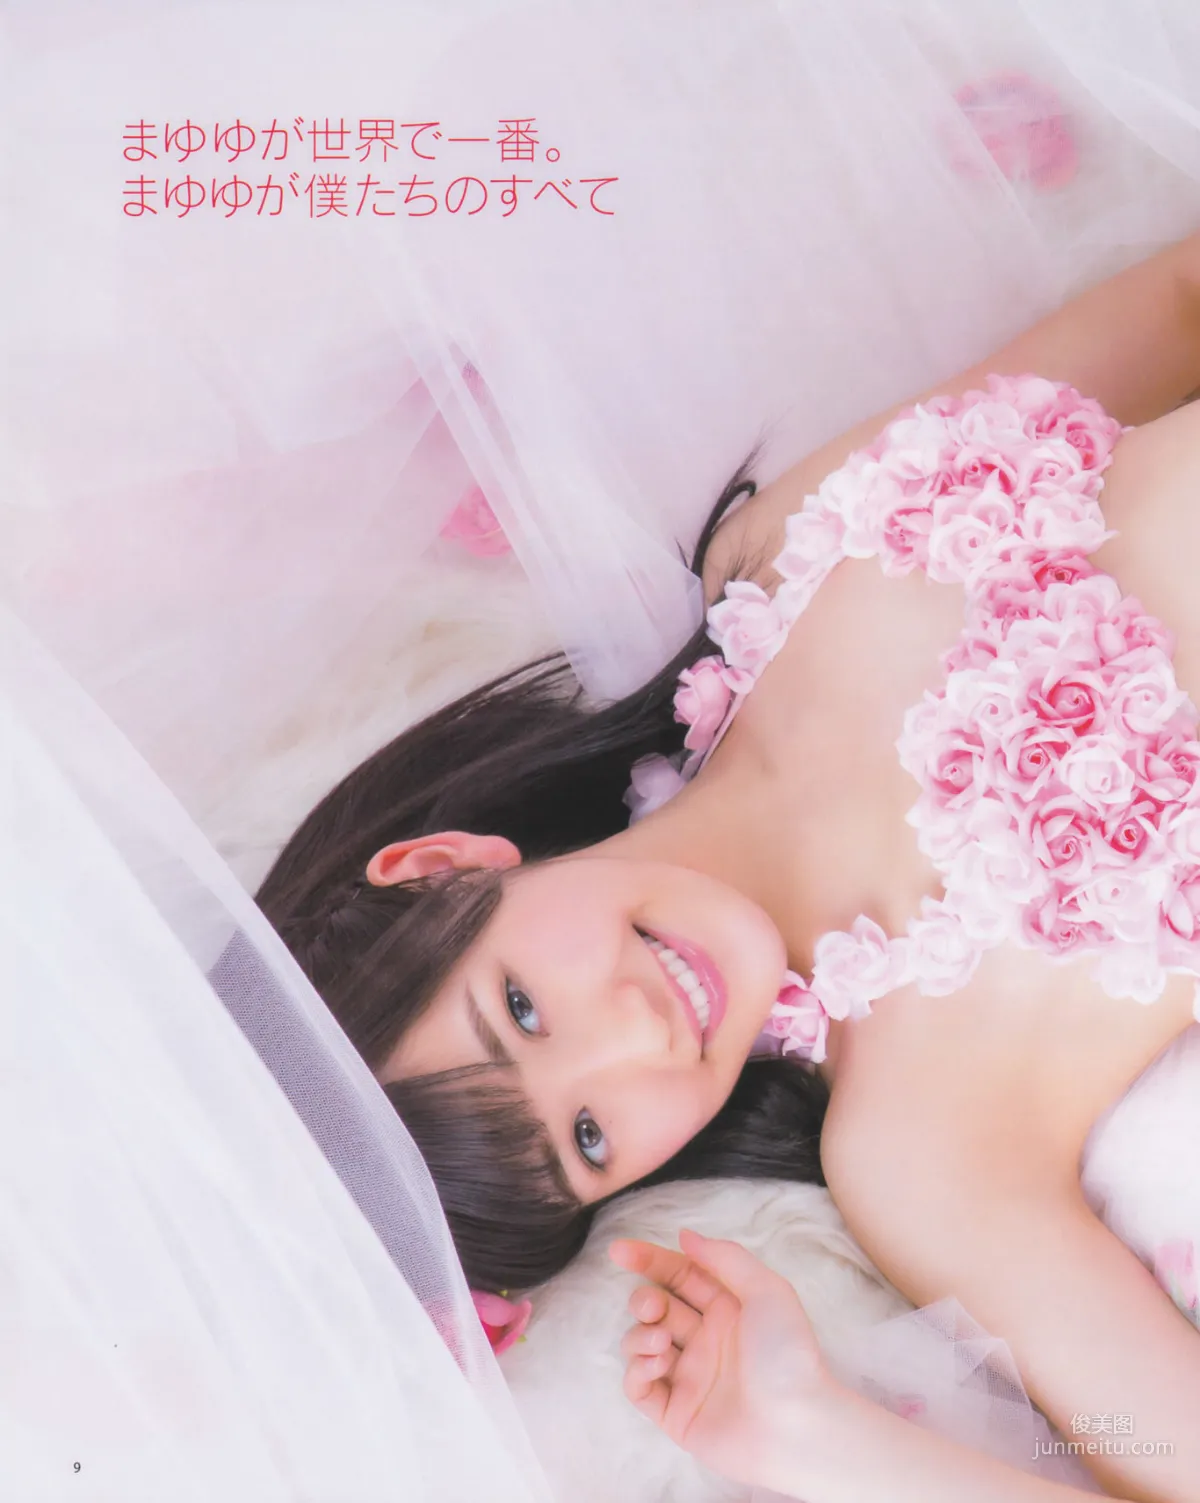 [Bomb Magazine] 2013年No.03 渡边麻友 秋元才加 AKB48 写真杂志10